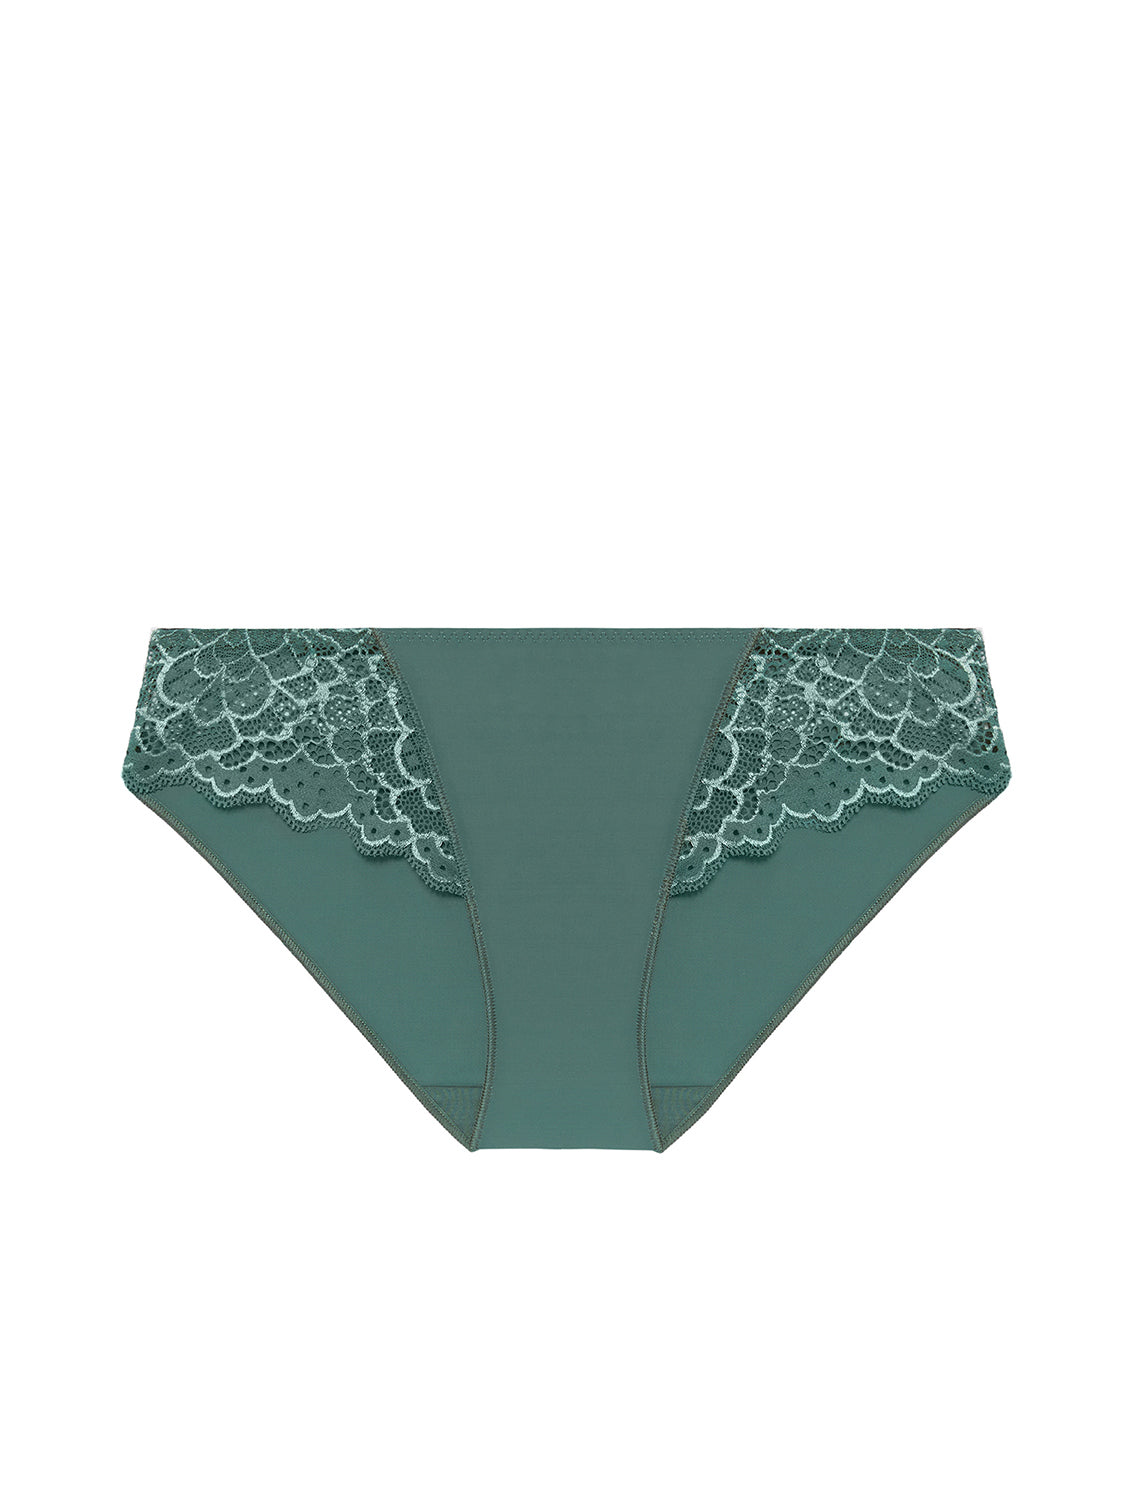 Caresse Bikini - Boreal Green